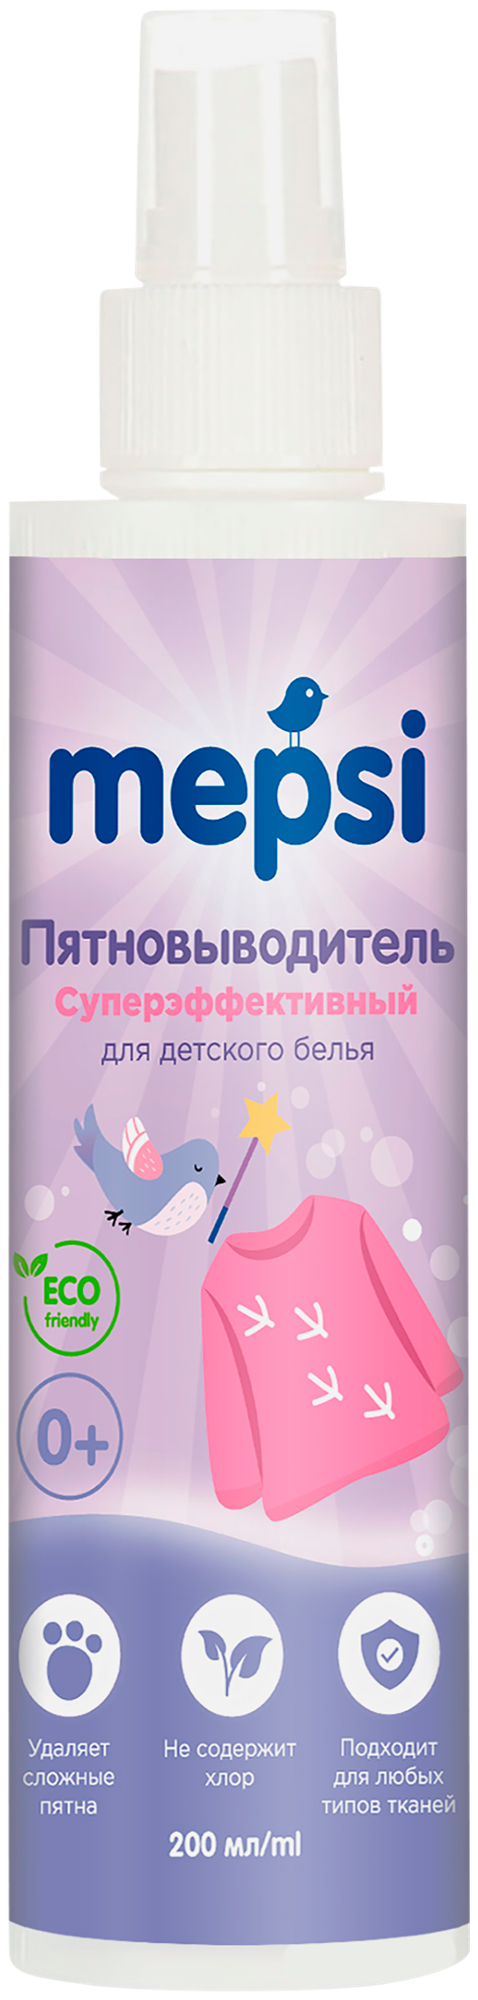 Пятновыводитель Mepsi для детского белья спрей